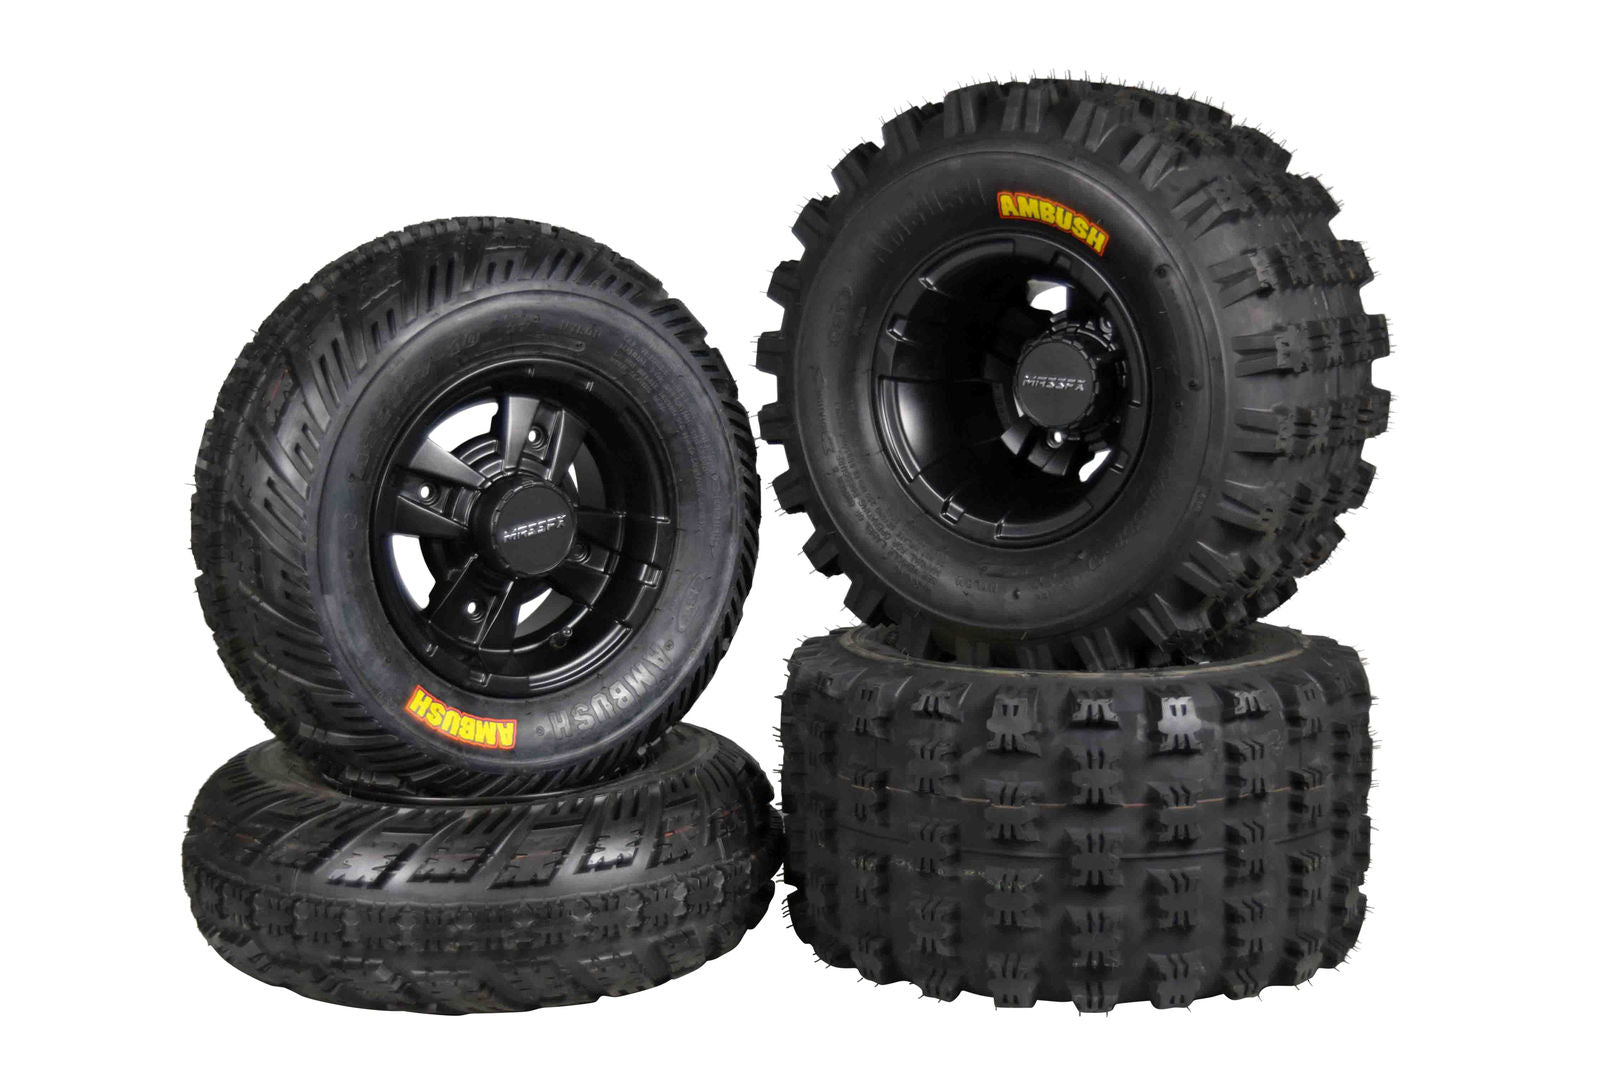 MASSFX 21x7-10 20x11-9 ATV Front Rear Tire & Wheel Kit 21x7x10 20x11x9 (4 Pack)